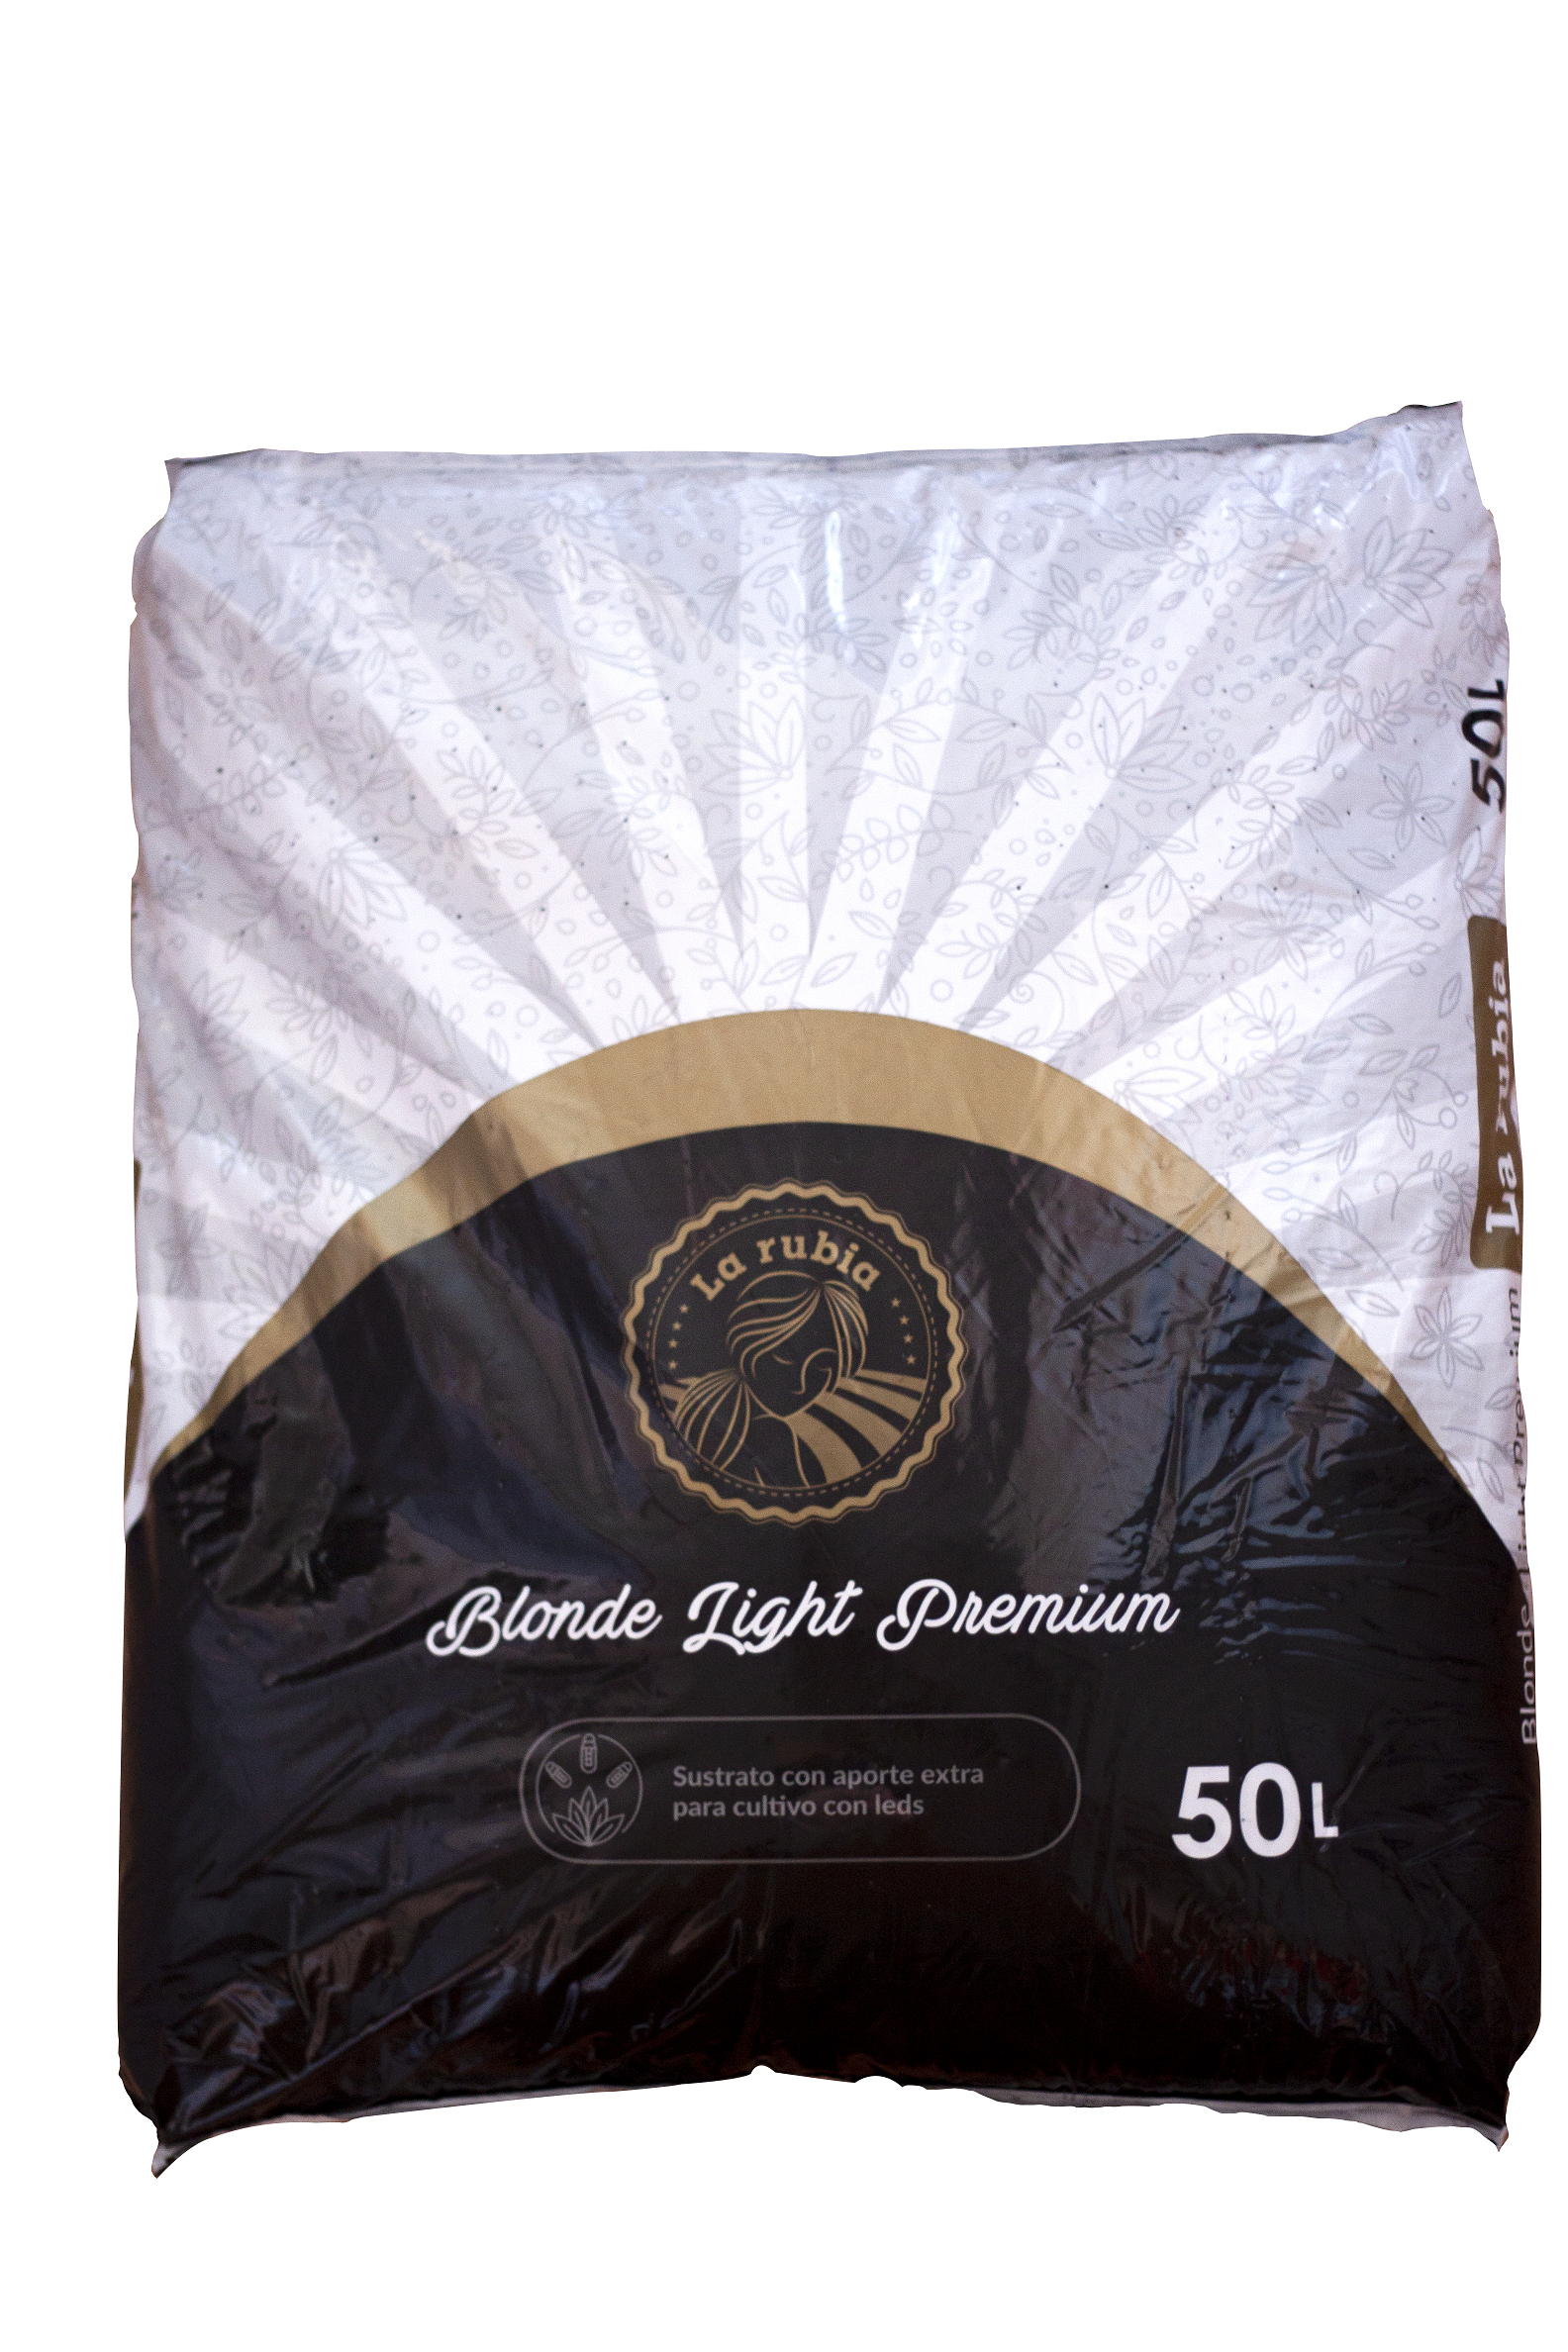 Sustrato La Rubia 50 L Blonde Light Premium 0